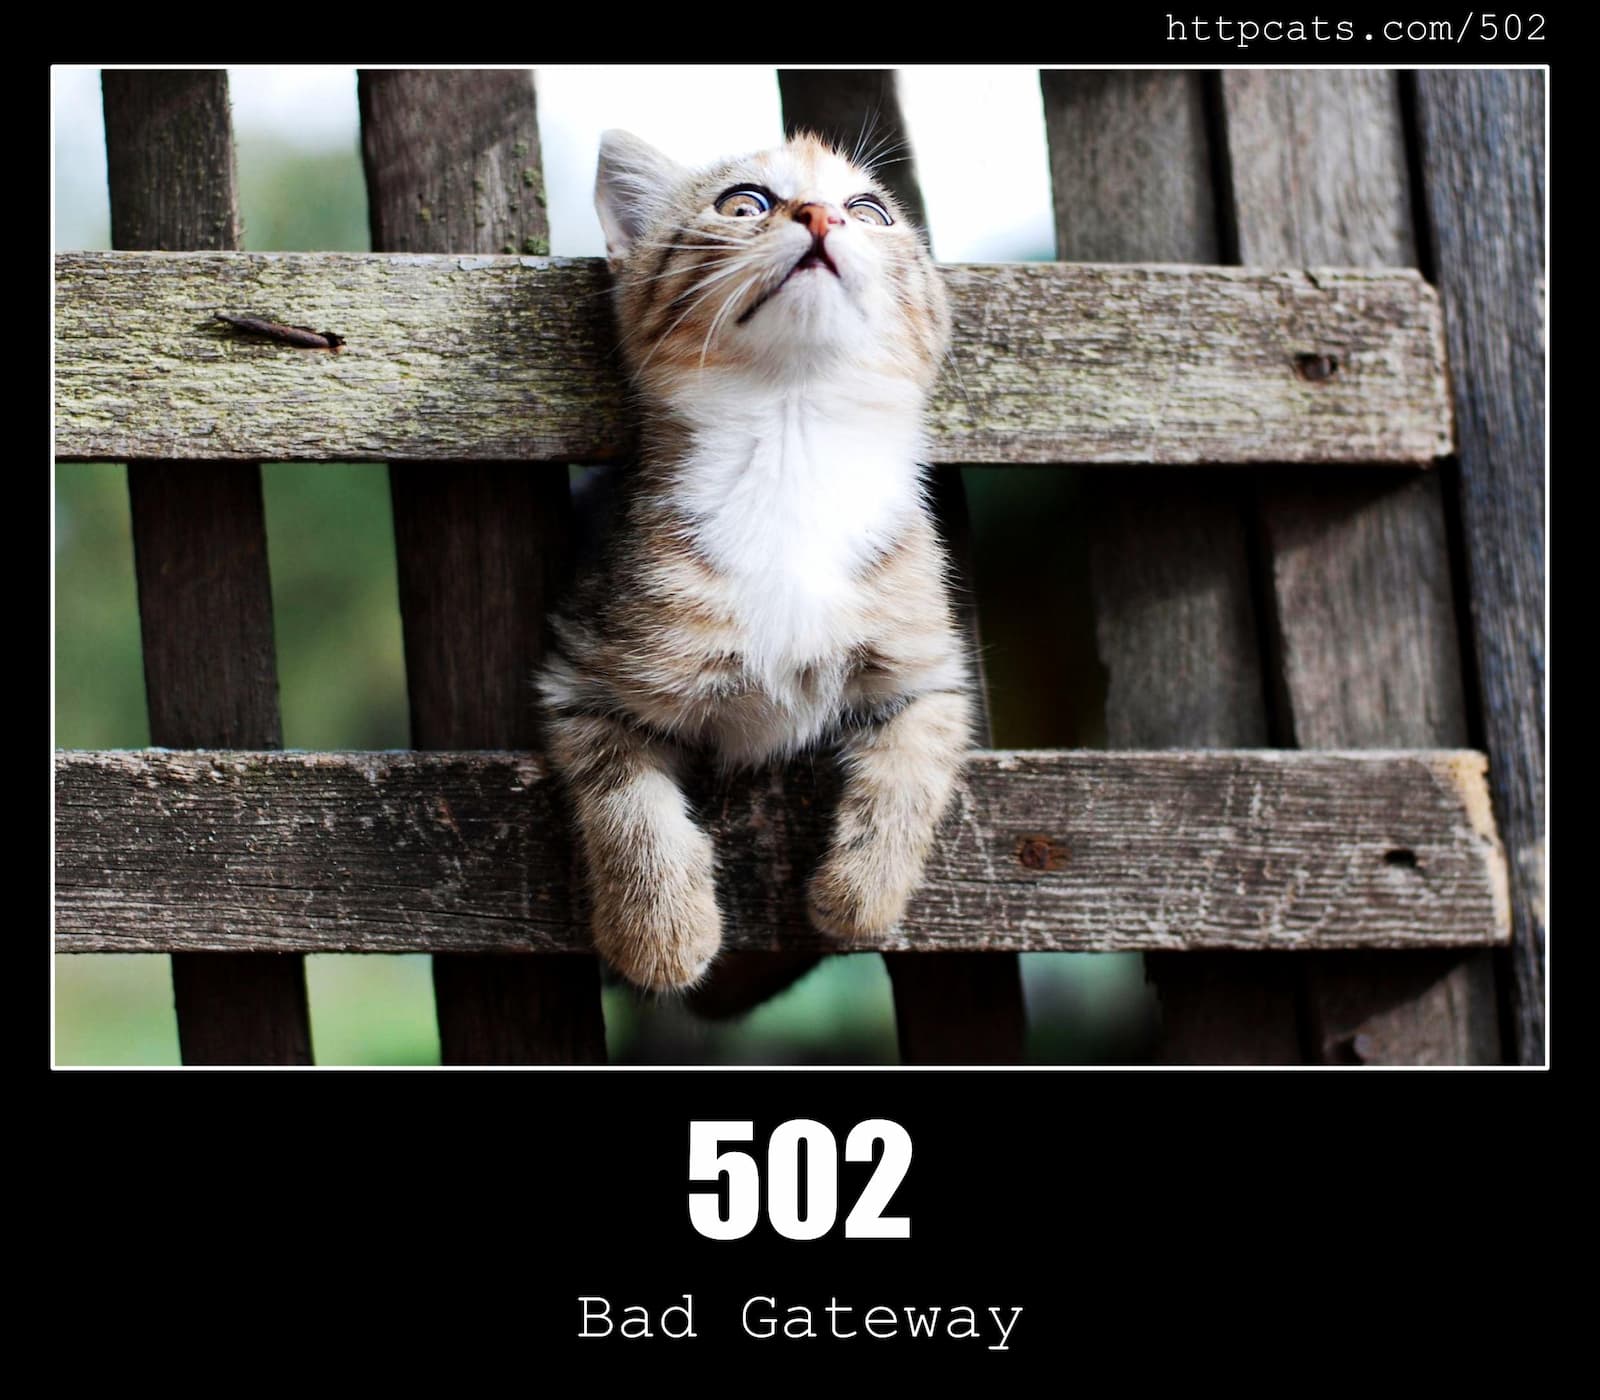 HTTP Status Code 502 Bad Gateway & Cats